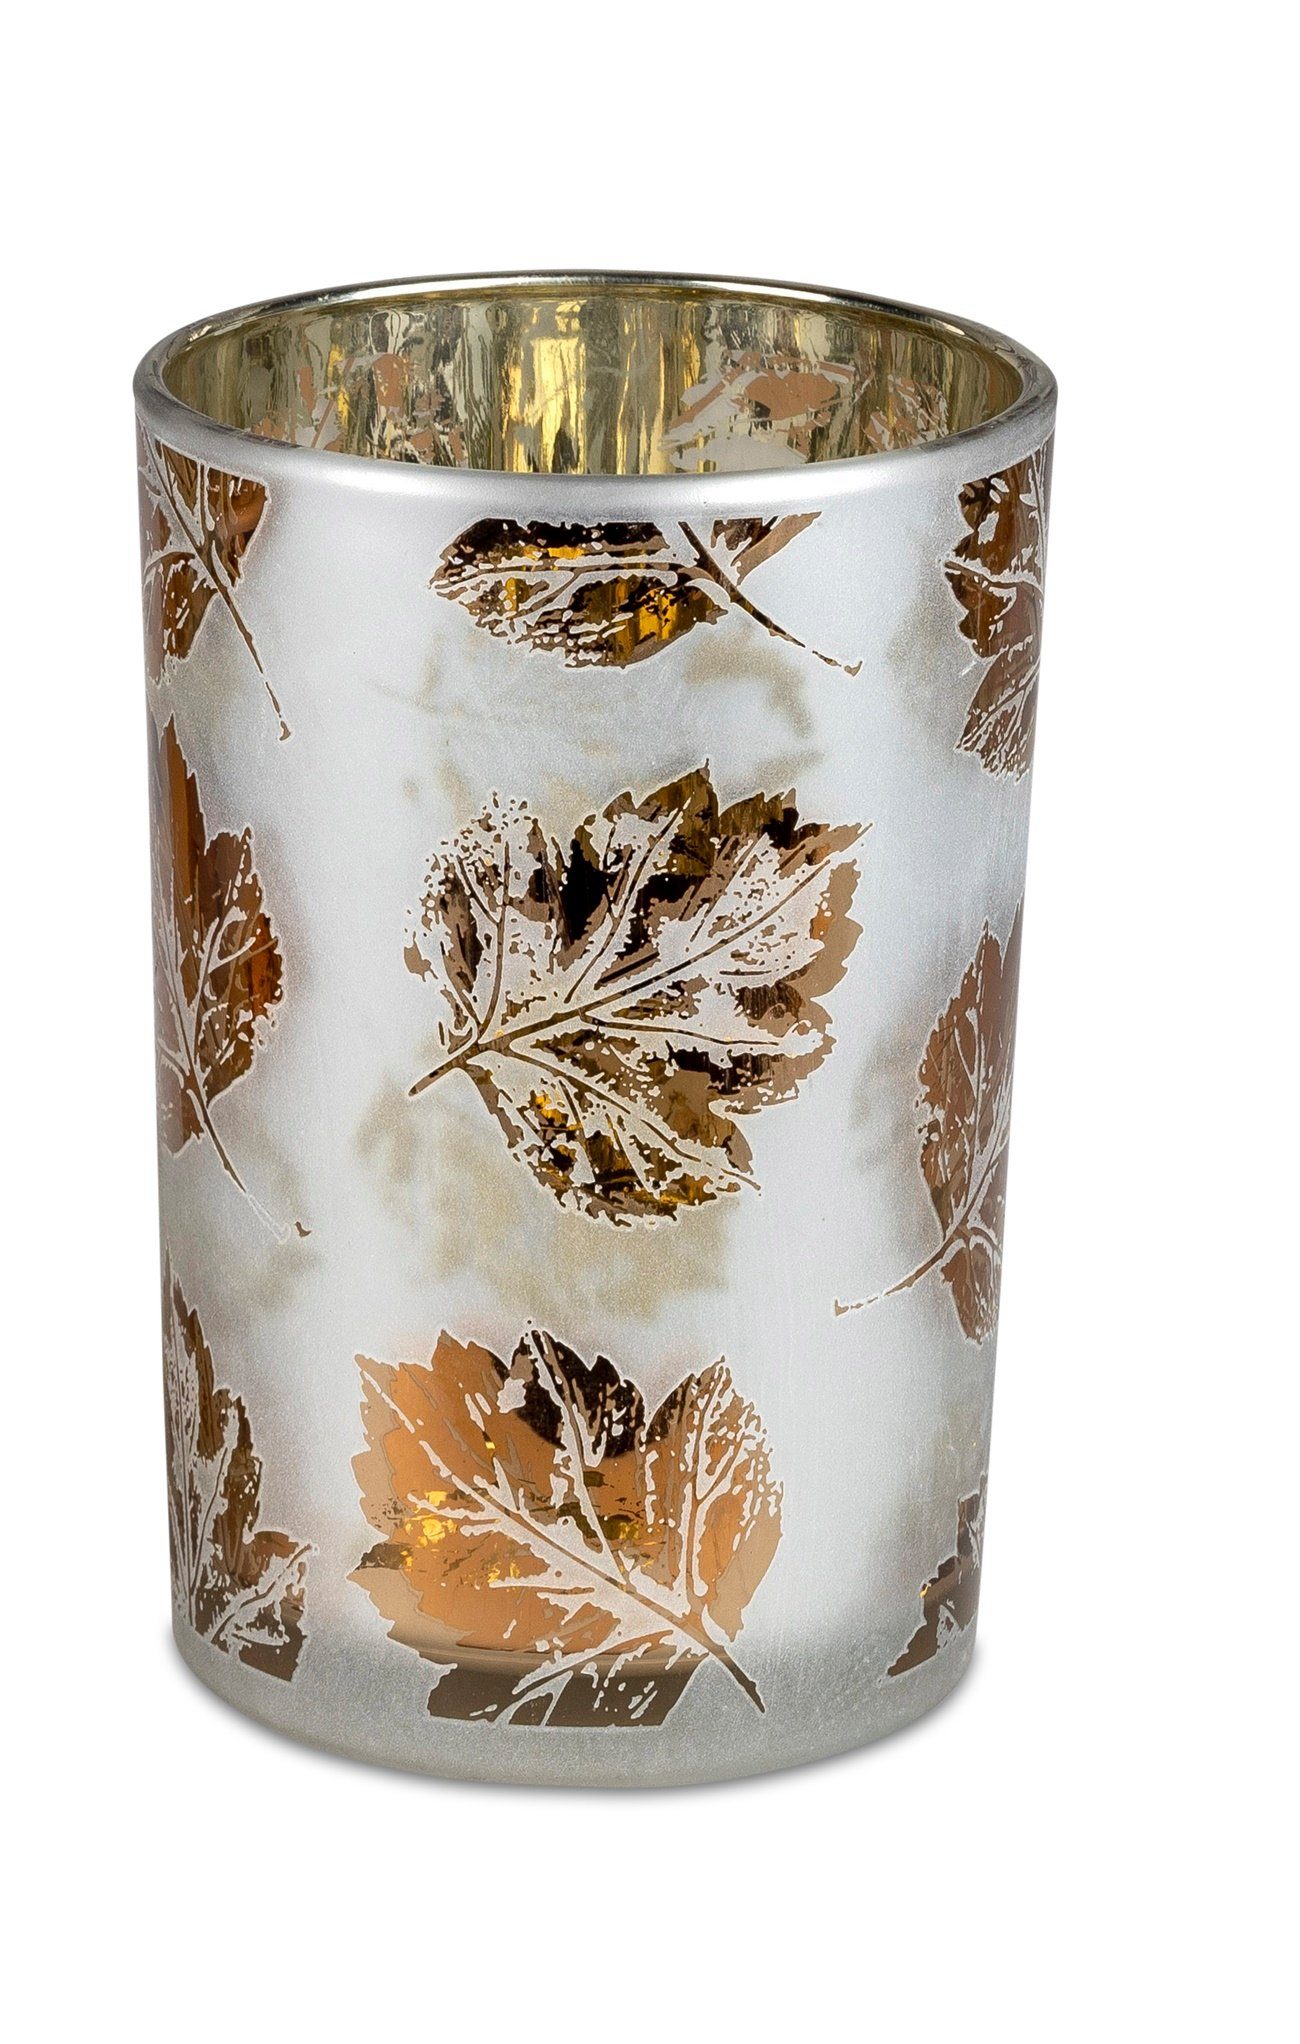 Windlicht dekojohnson Windlicht-Glas Teelichthalter Blätterdekor 18cm